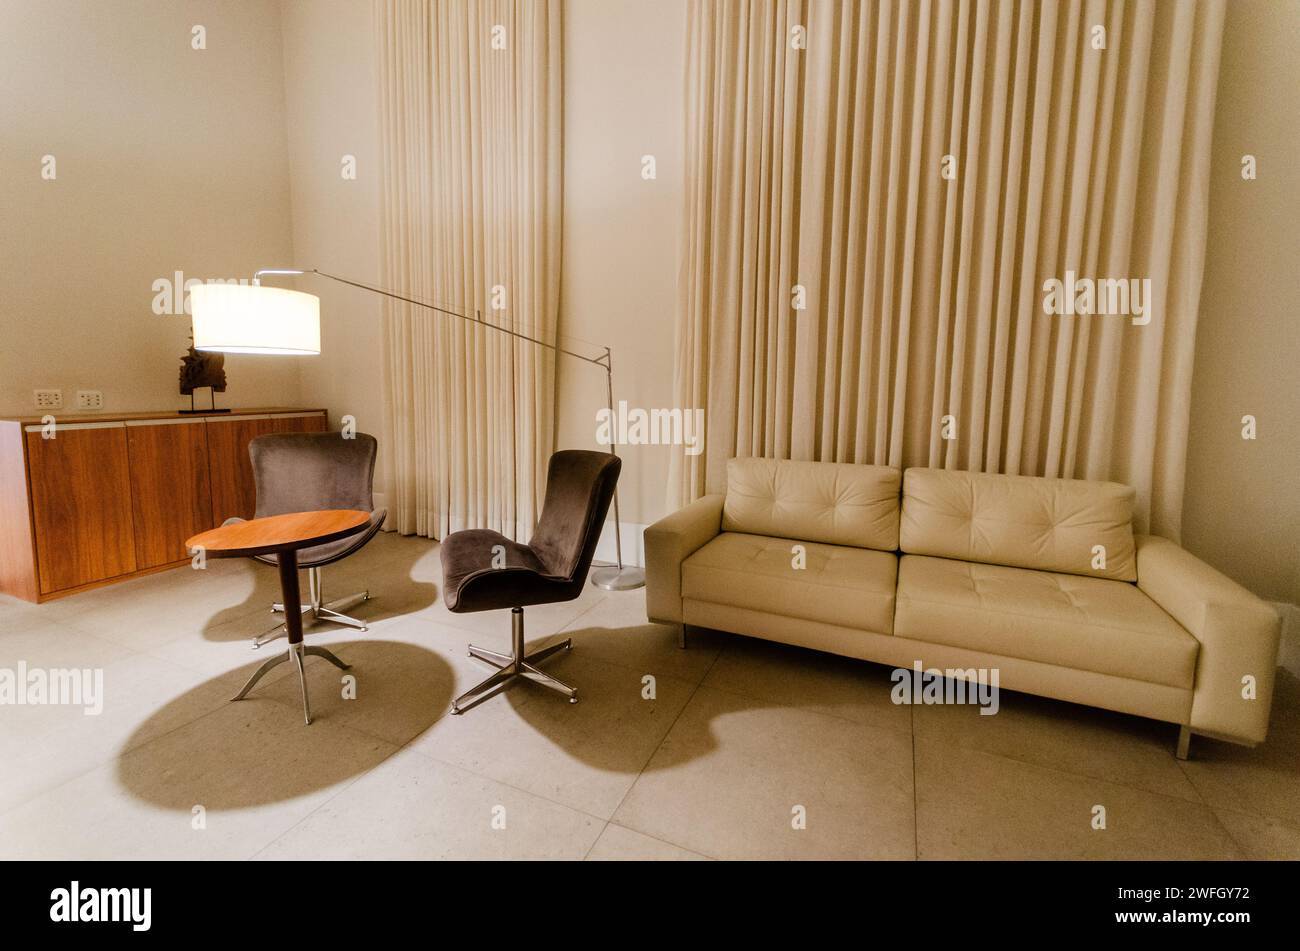 Una sedia e un divano sono situati nell'angolo di una camera Foto Stock